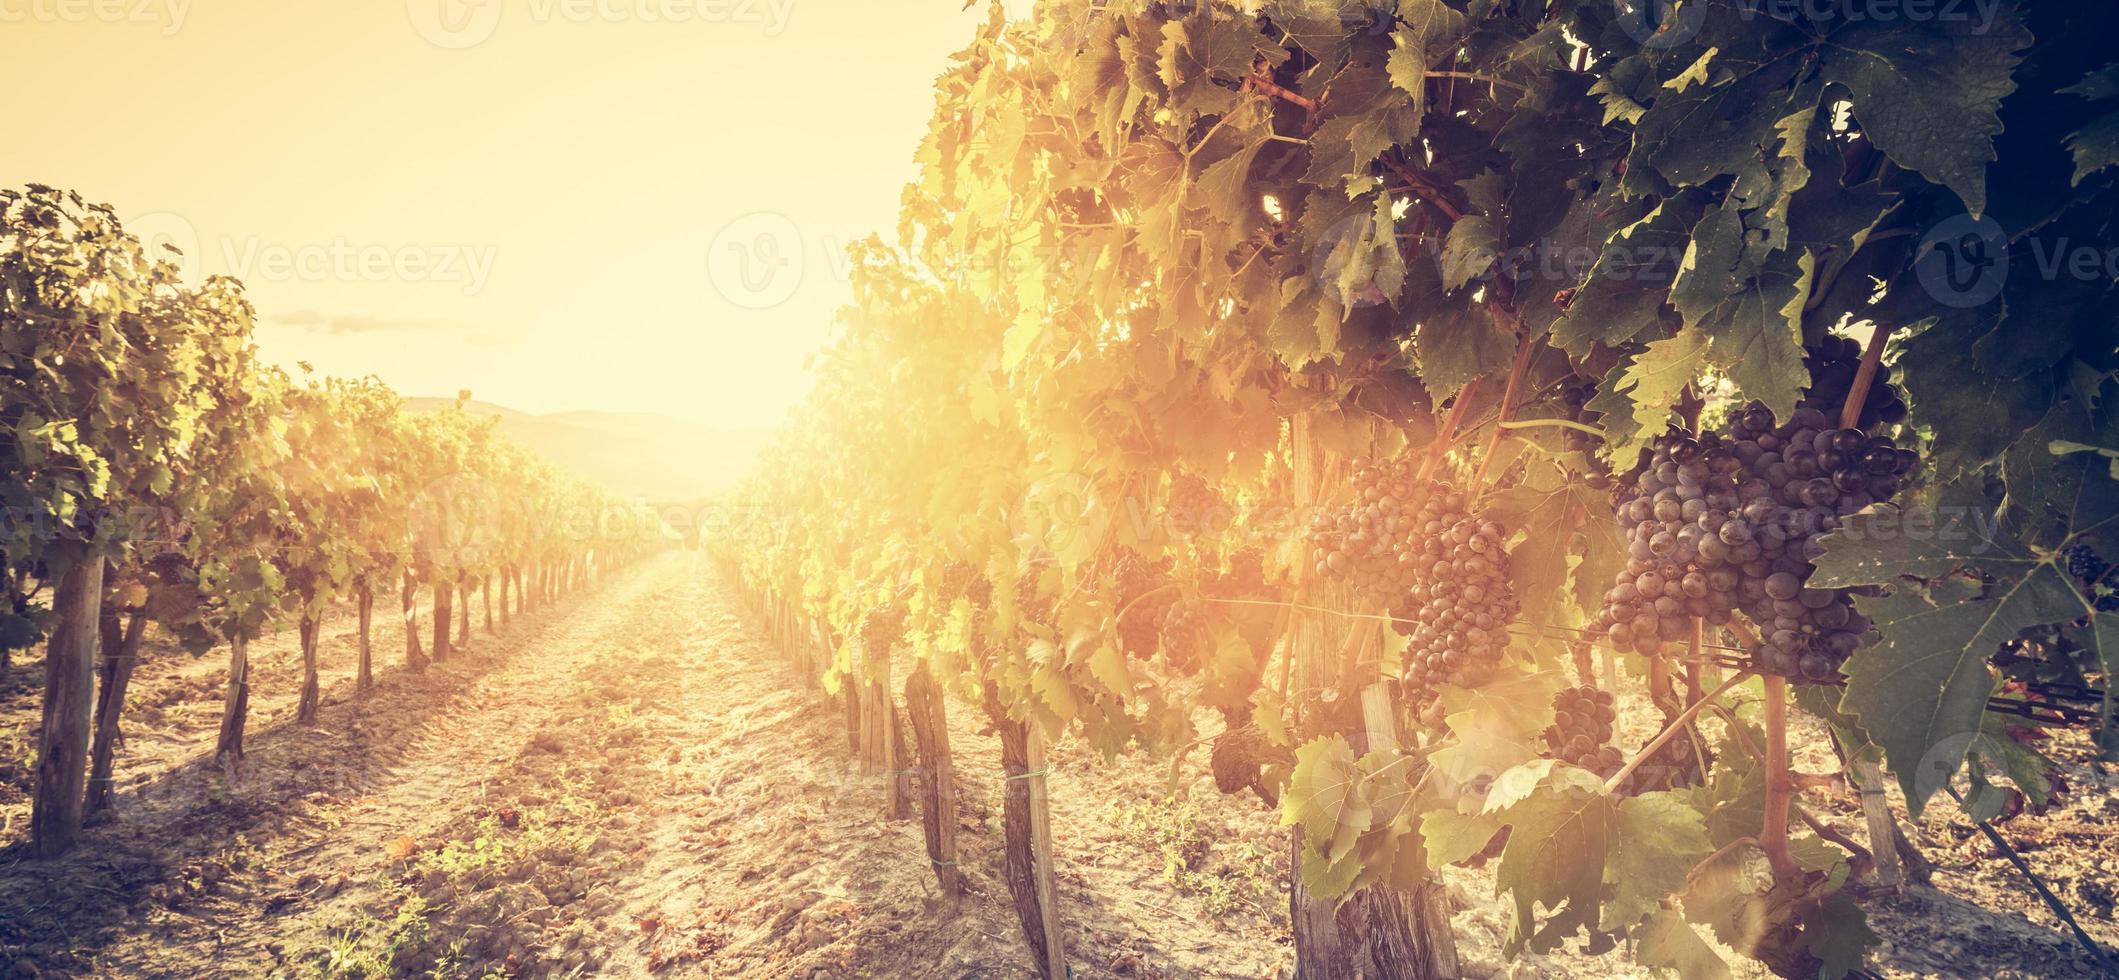 wijngaard in toscane, italië. wijnboerderij bij zonsondergang. vintage foto